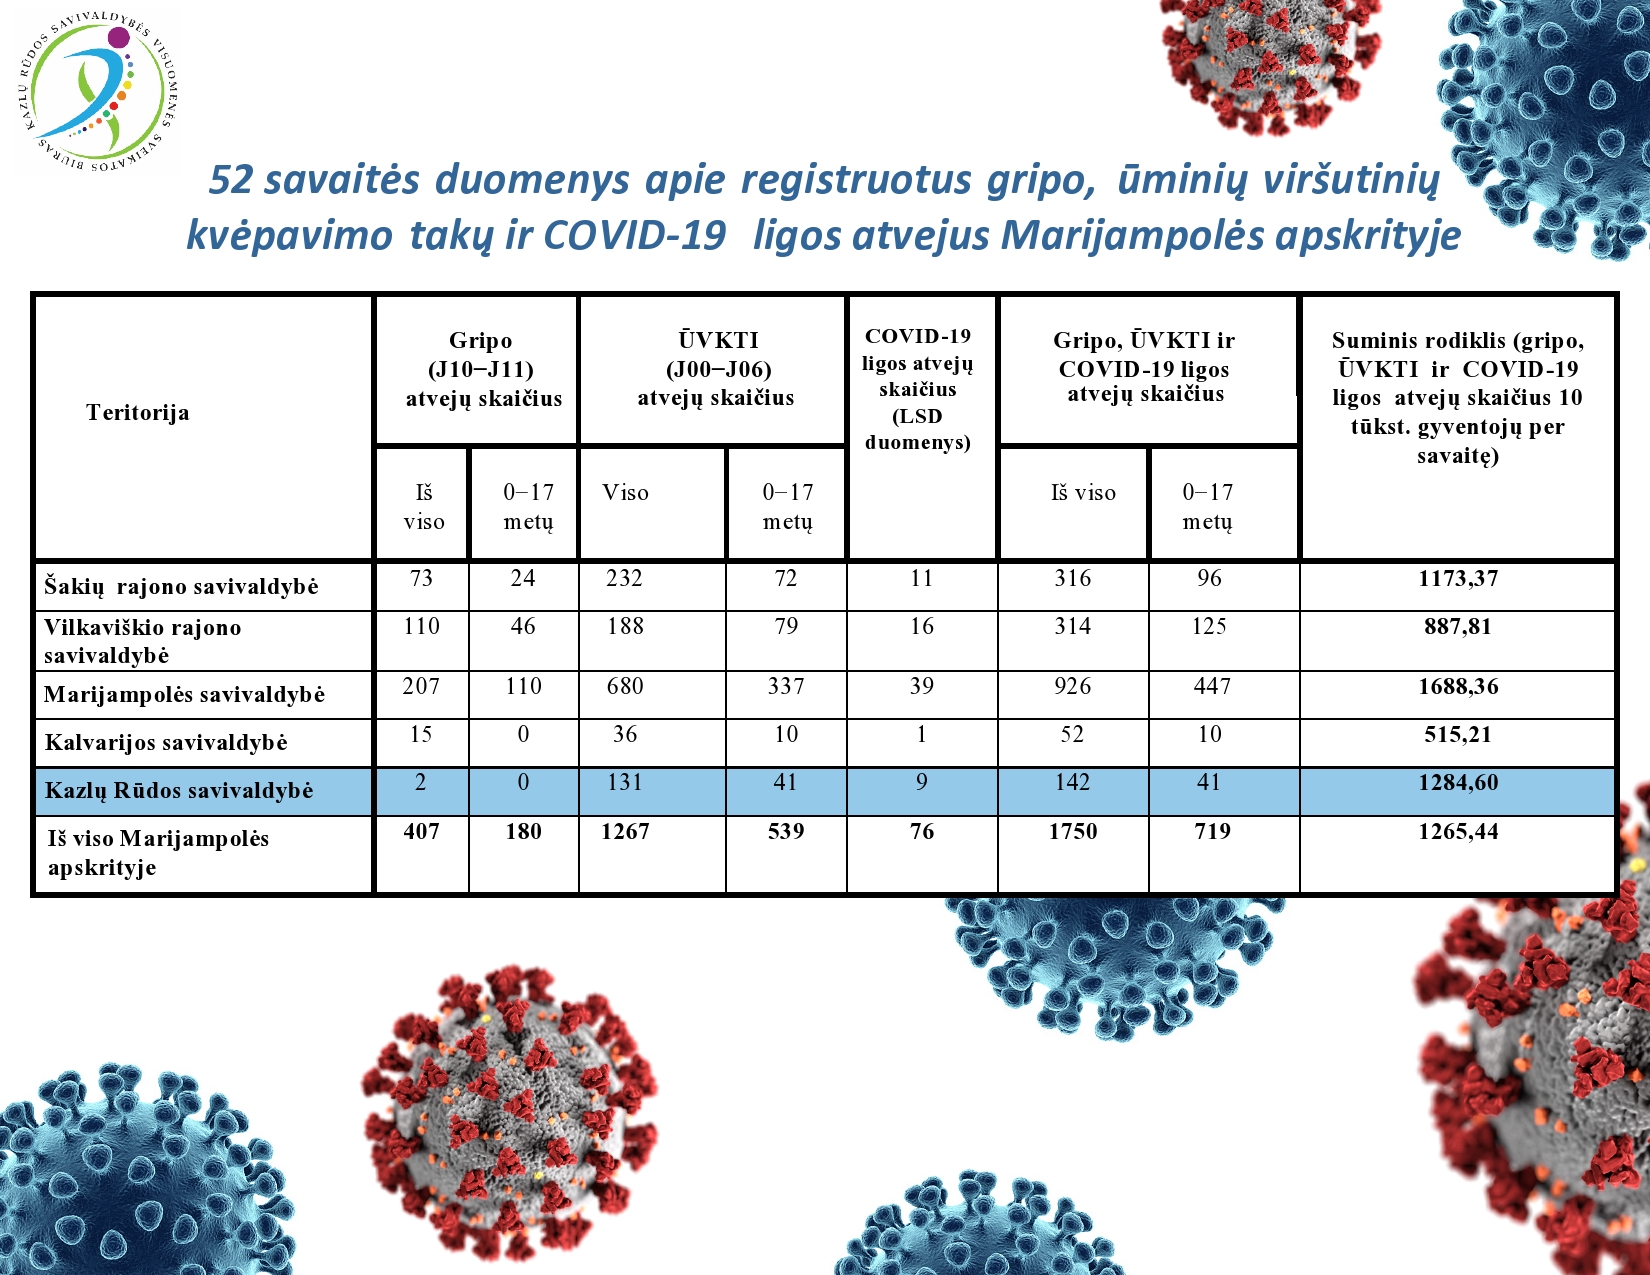 52-savaites-duomenys-apie-registruotus-gripo,-uminiu-virsutiniu-kvepavimo-taku-ir-covid-19-ligos-atvejus-marijampoles-apskrityje